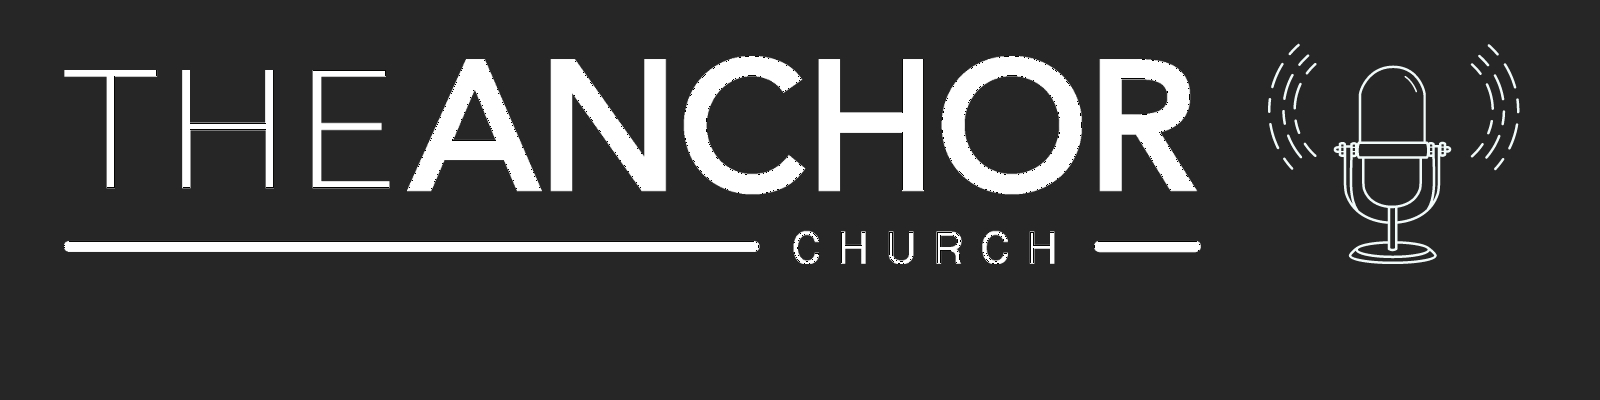 The ANCHOR Church